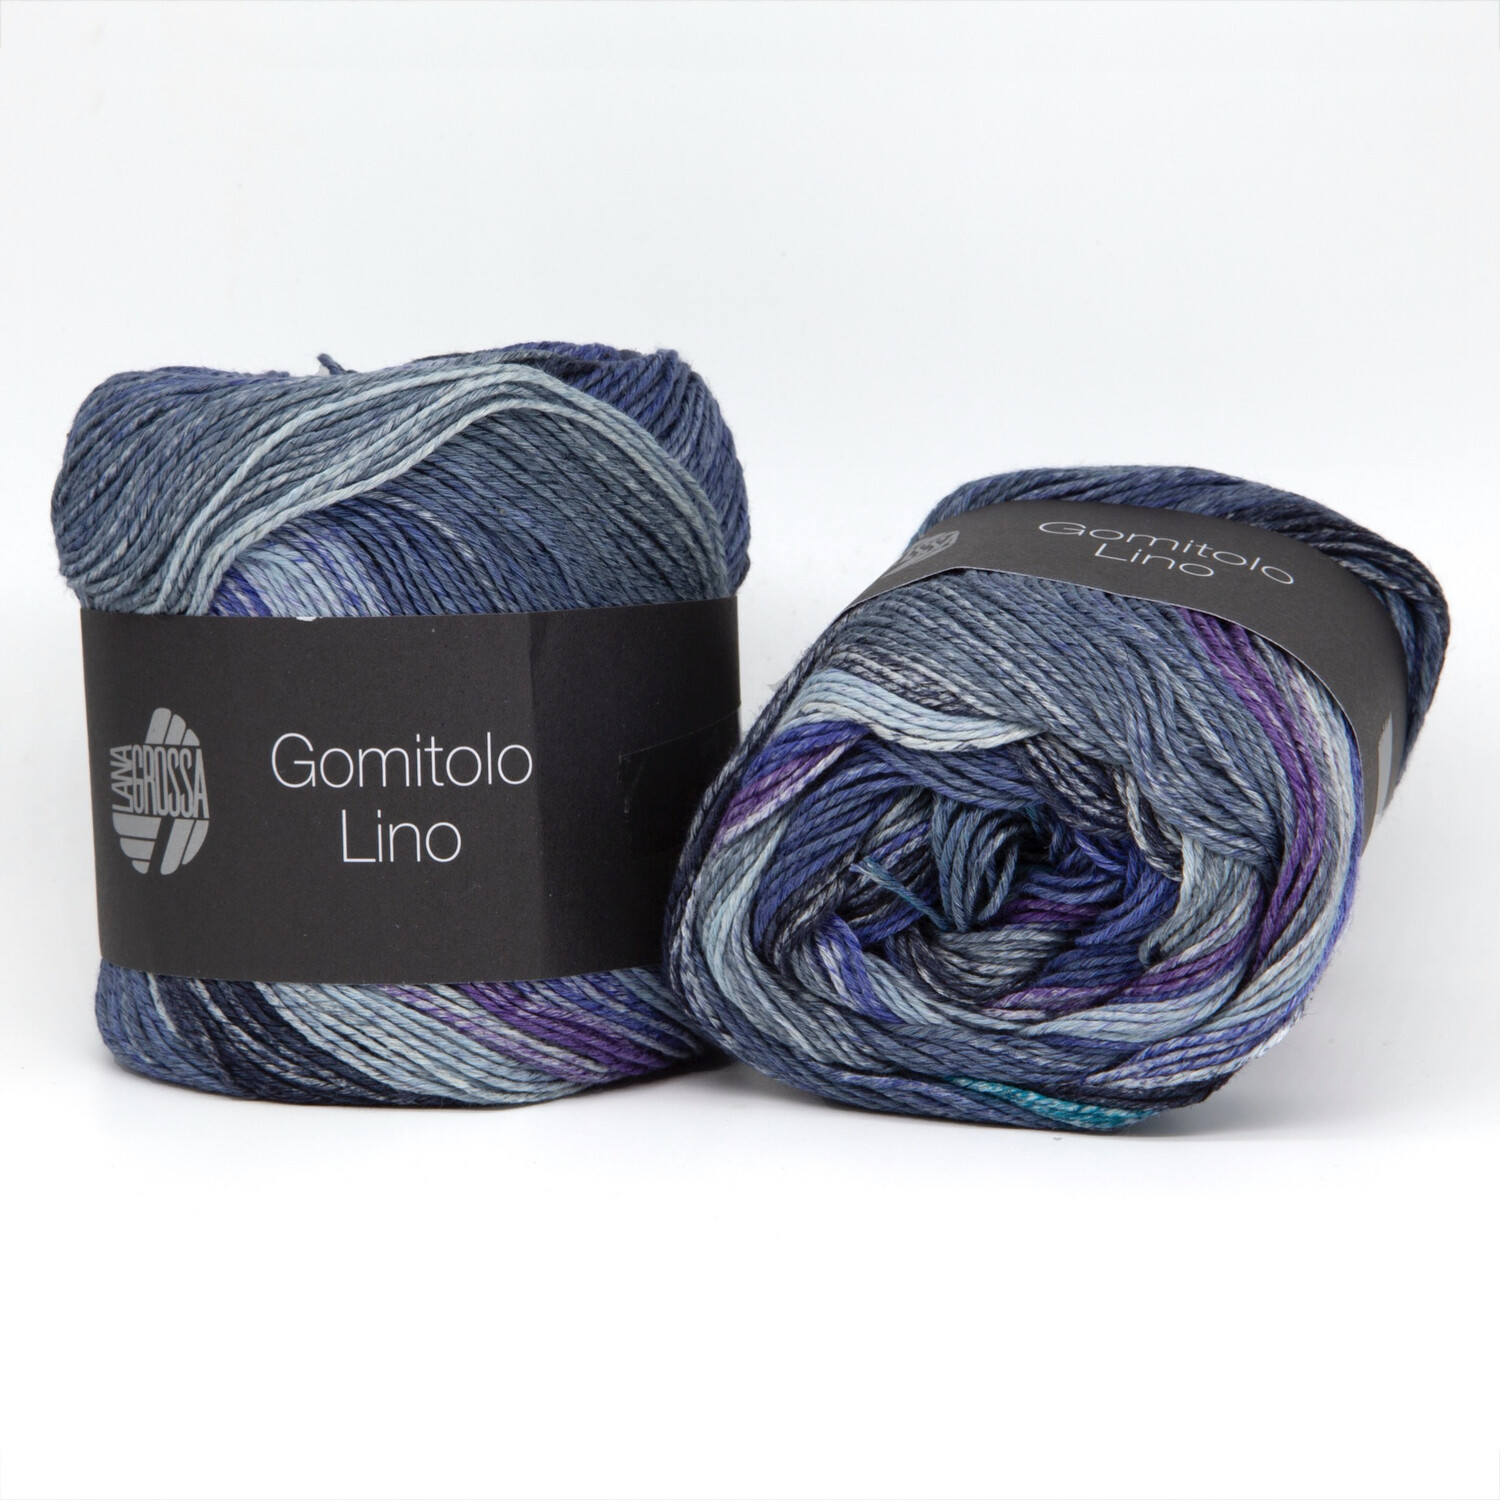 gomitolo lino 2015-серебристо-серый/джинс-синий/серый/сине-фиолетовый/петроль